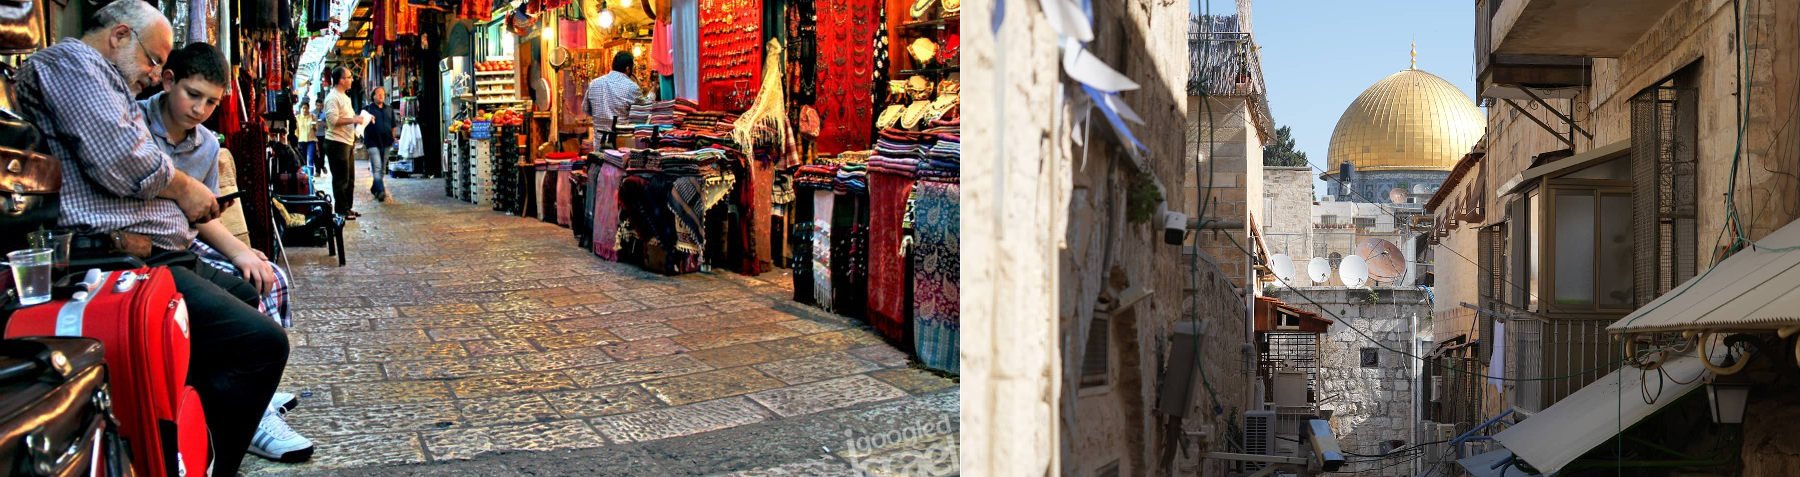 دعوة لزيارة القدس القديمة. الاستمرار في العمل التطوعي الخيري- من نشرة ملح الأرض رقم 129